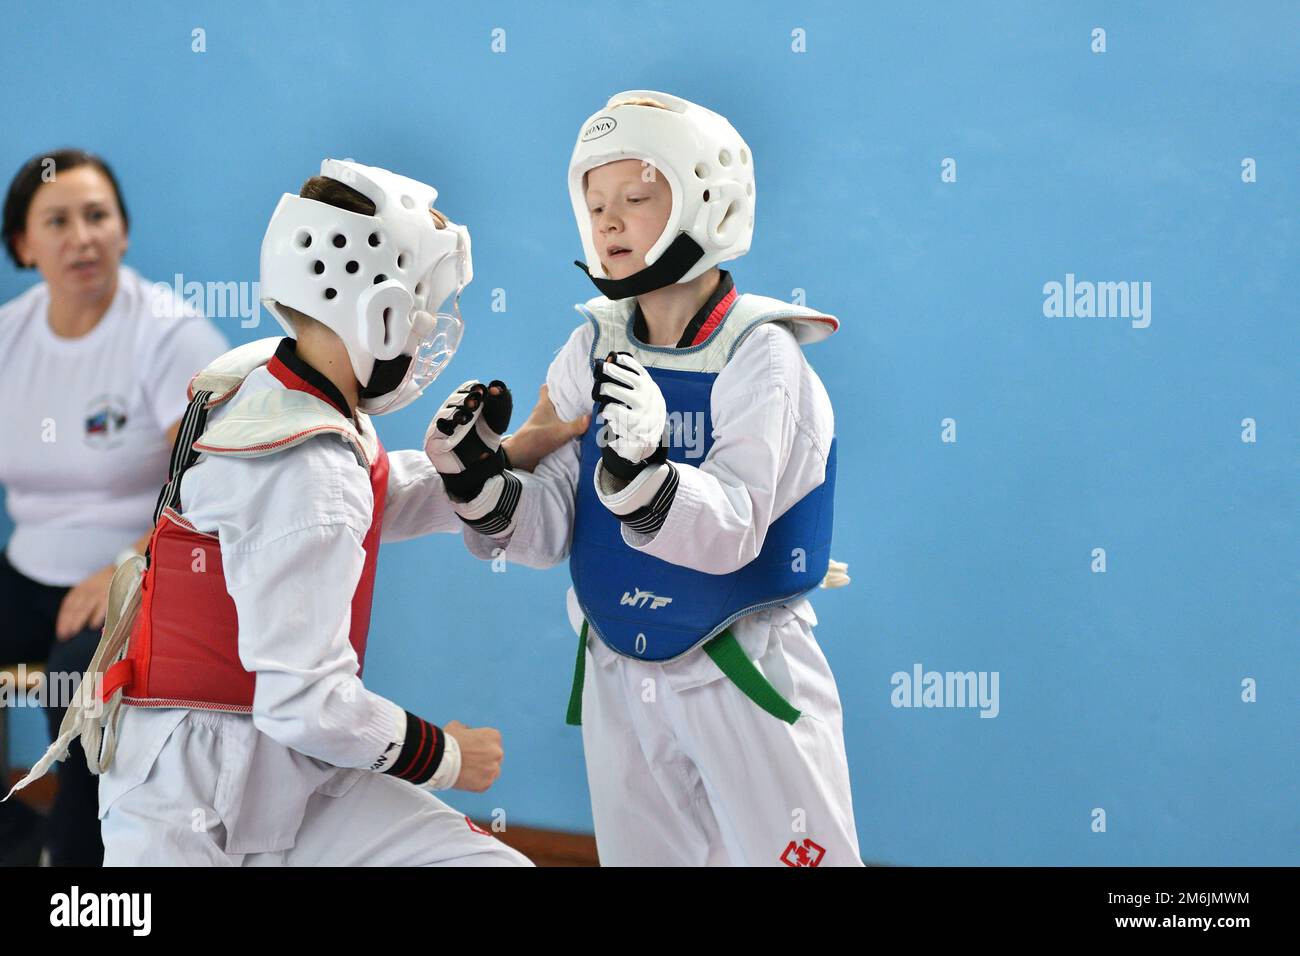 Orenburg, Russia - October 19, 2019: Boy compete in taekwondo (Korean martial arts) at Orenburg Open Stock Photo